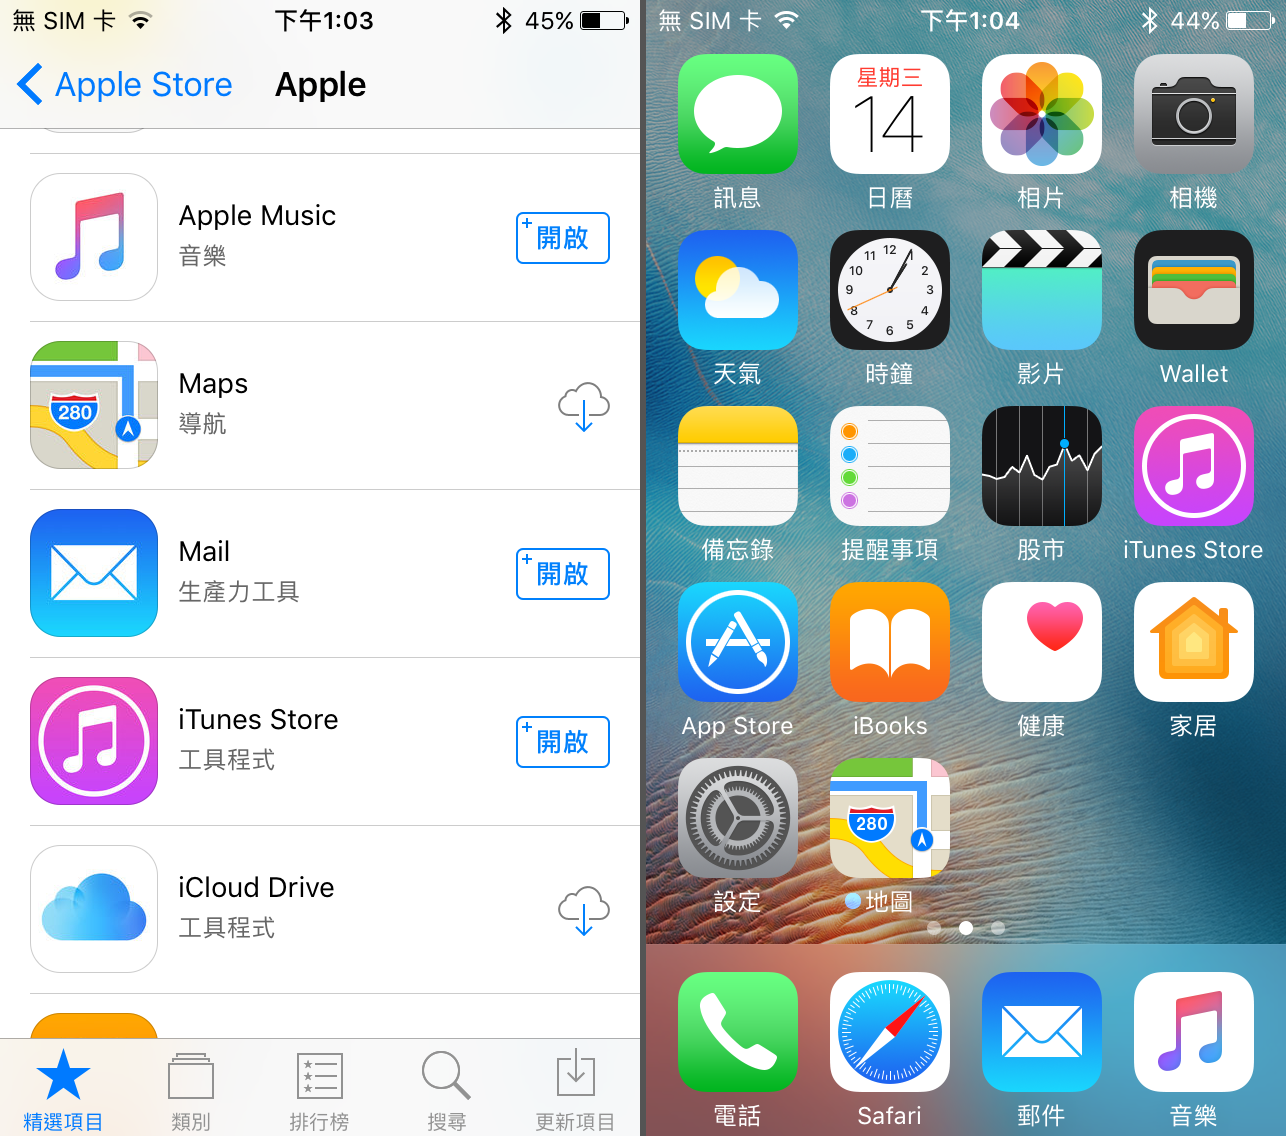 【iOS 10 技巧】如何在 iOS 10 「移除」預設 App!？ - New MobileLife 流動日報